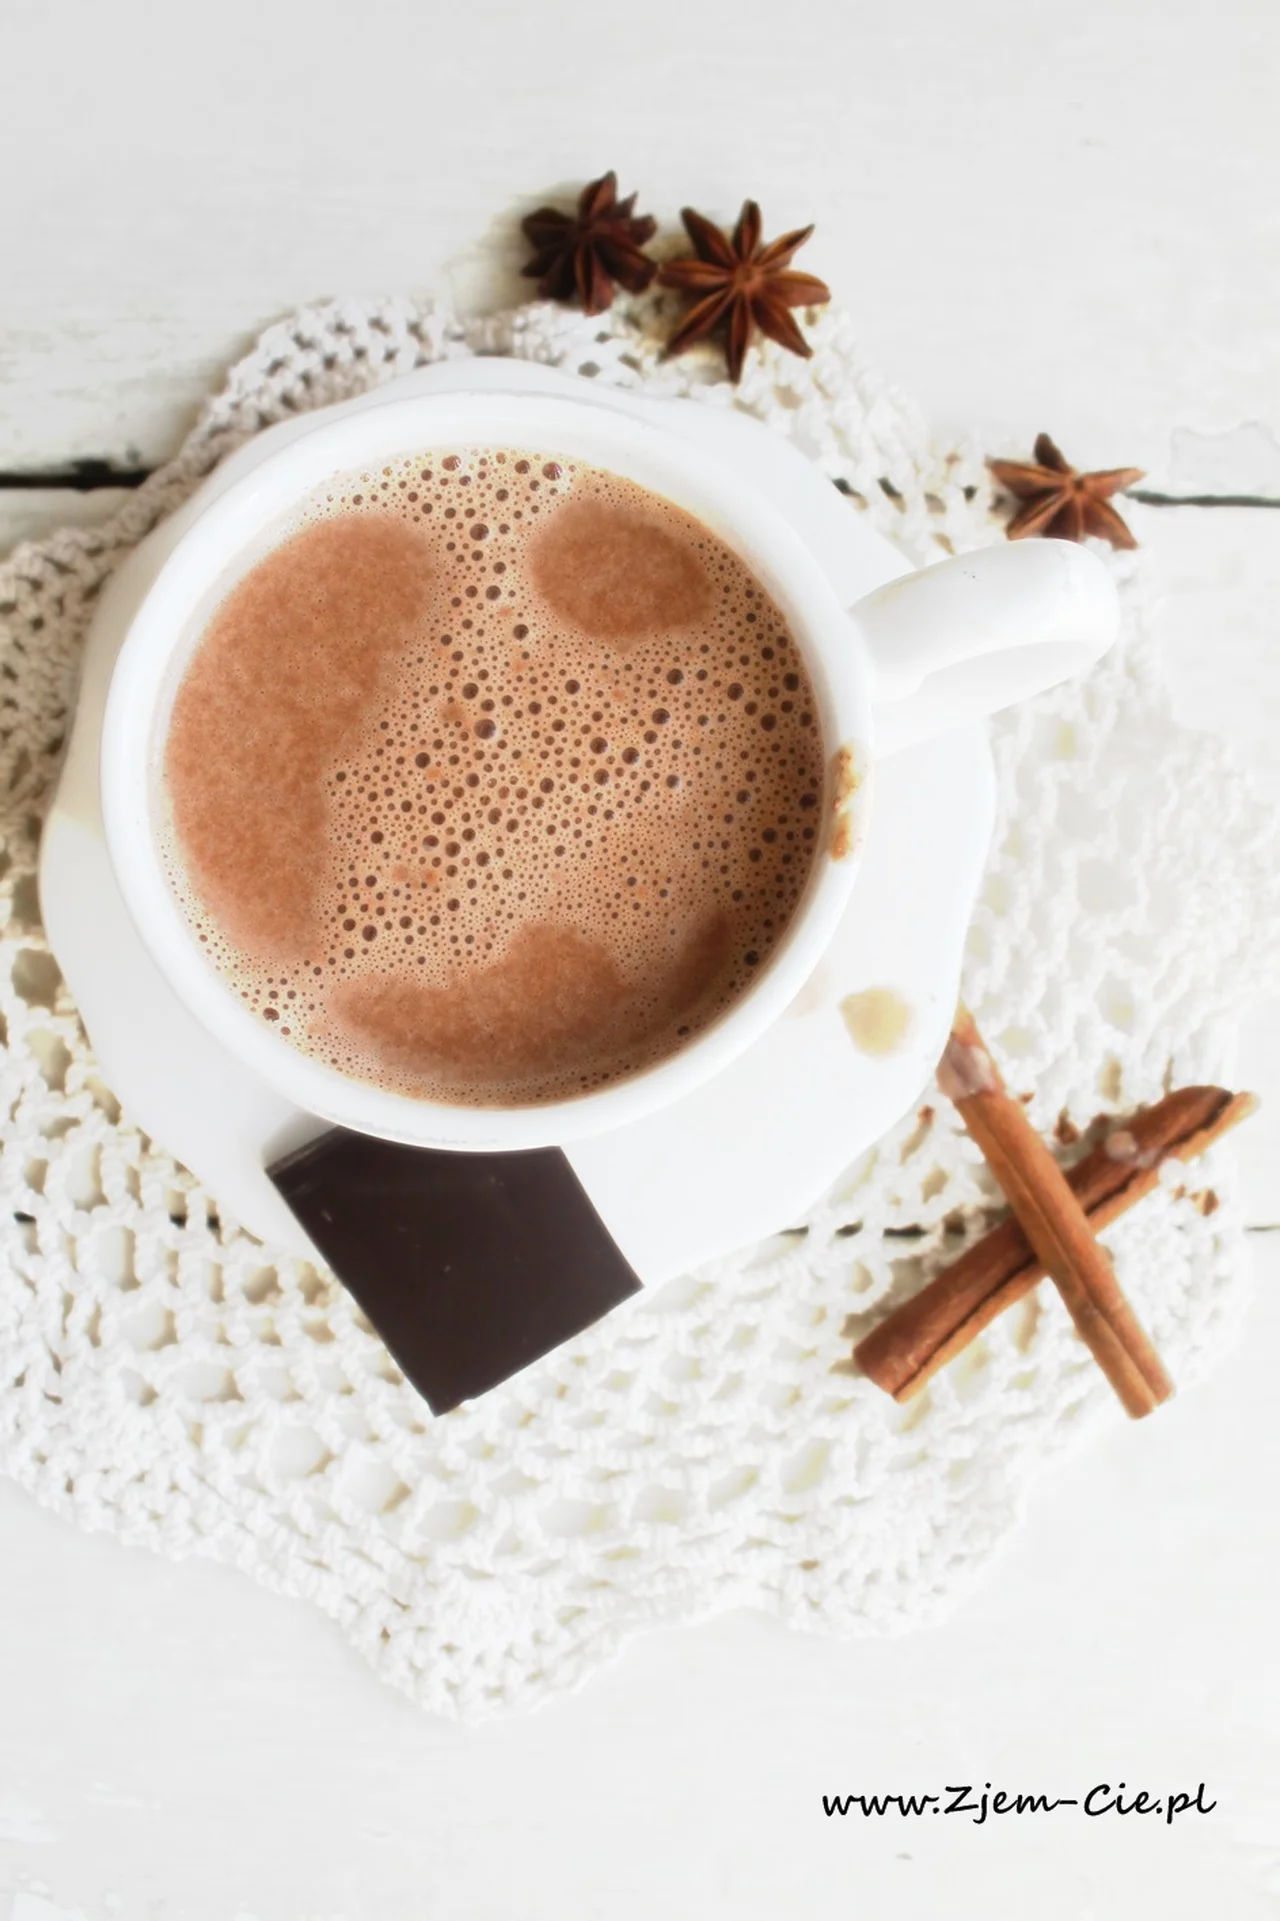 Gorąca czekolada – Twój słodki sposób na rozpieczenie w 5 minut:)